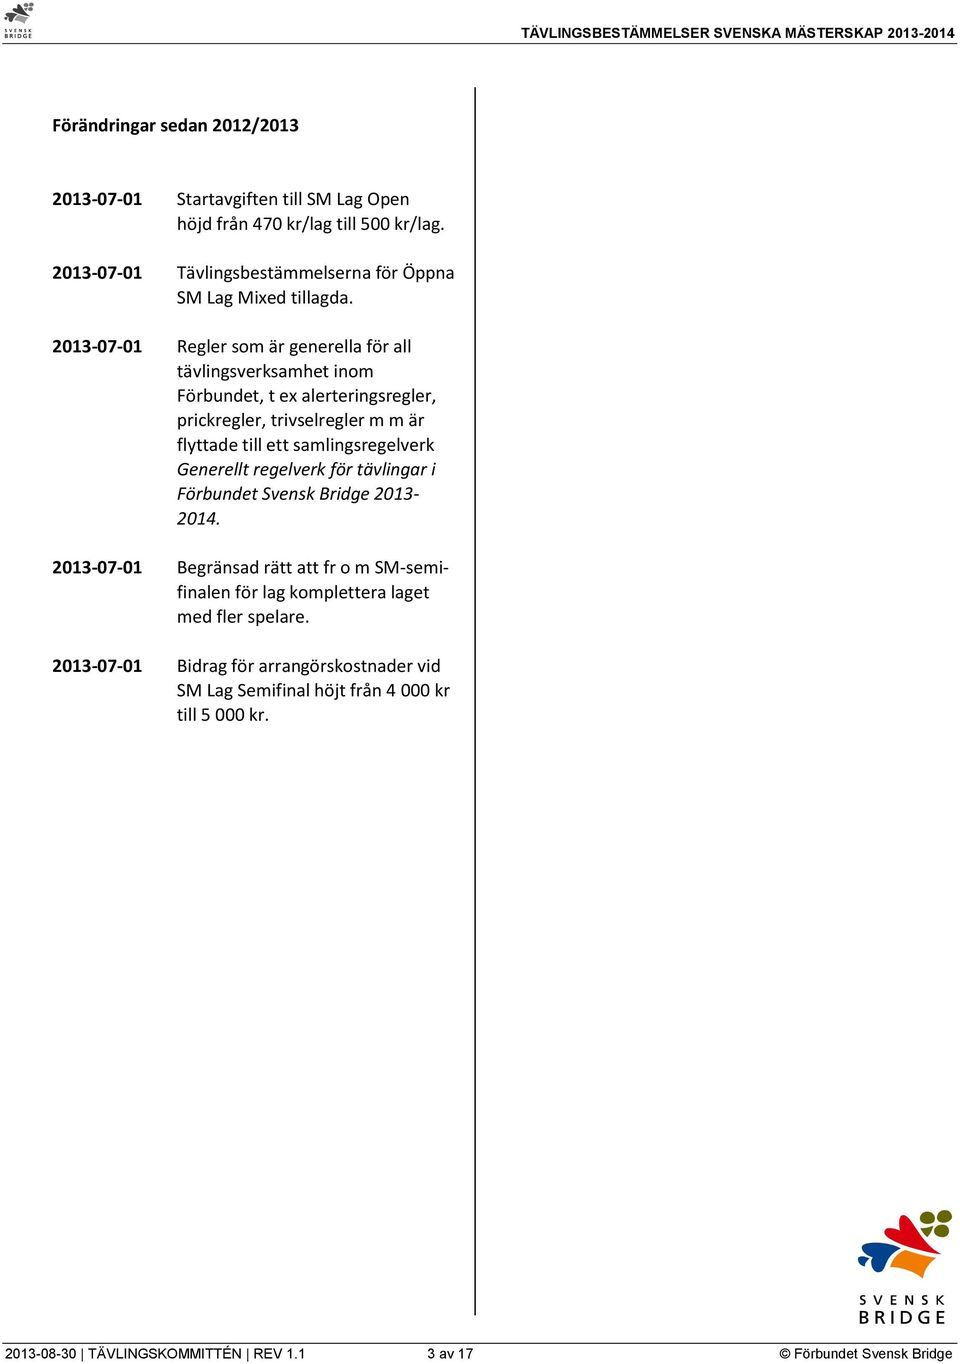 2013-07-01 Regler som är generella för all tävlingsverksamhet inom Förbundet, t ex alerteringsregler, prickregler, trivselregler m m är flyttade till ett